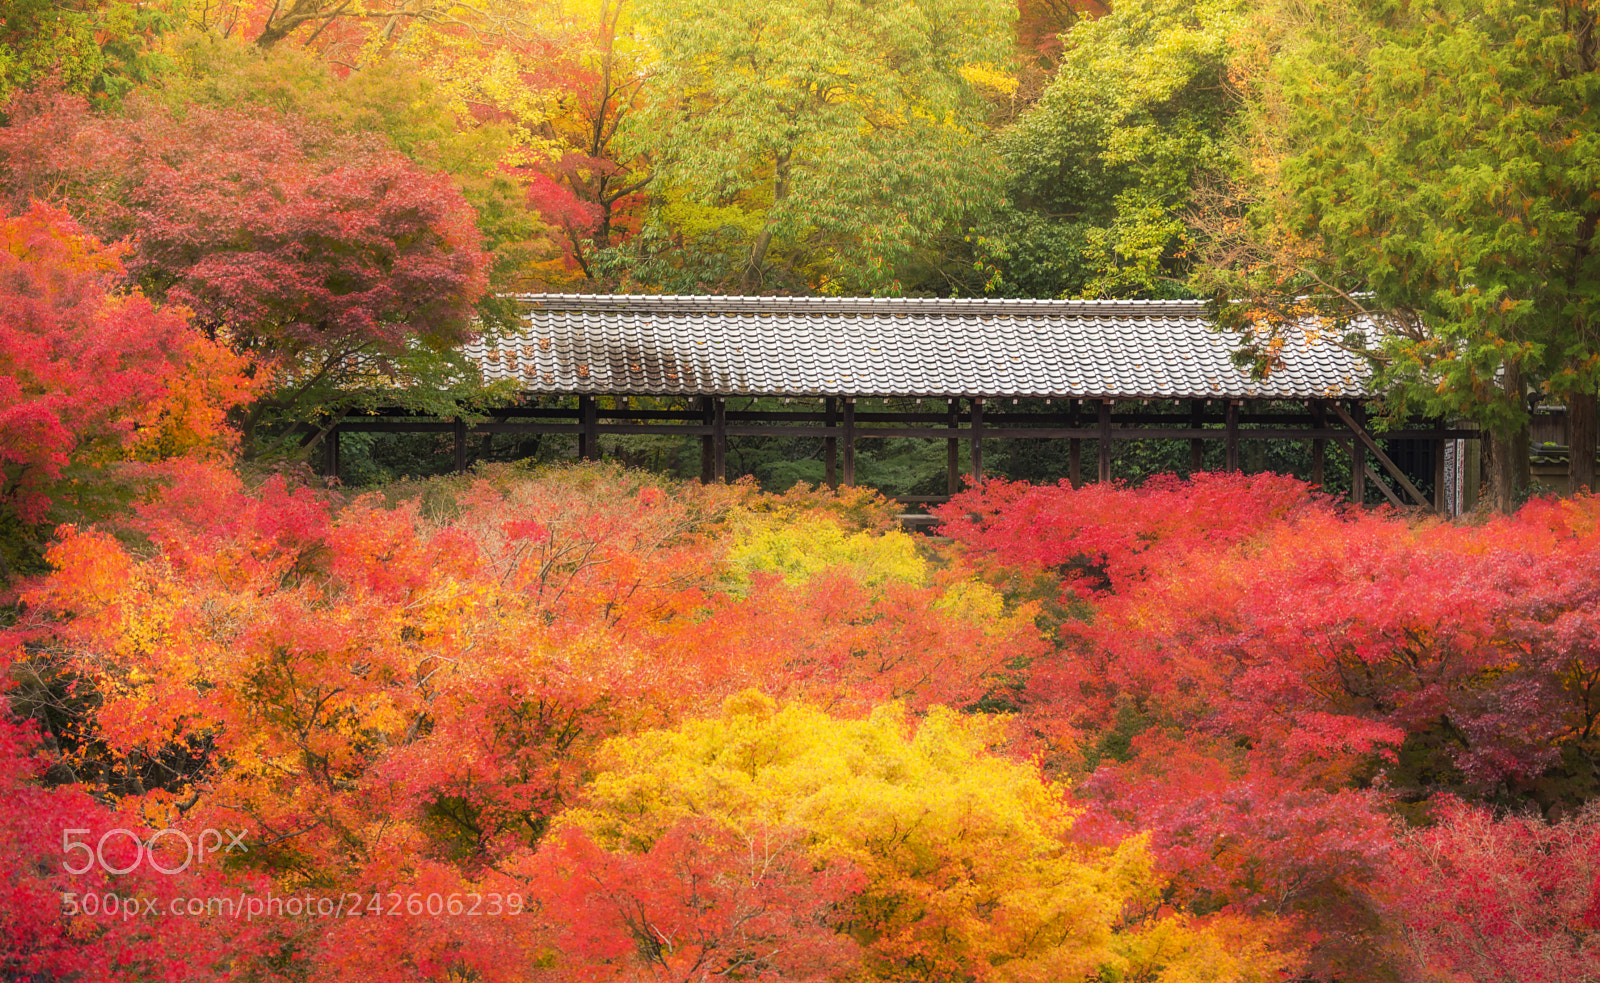 Nikon D750 sample photo. Fall color at tofukuji photography